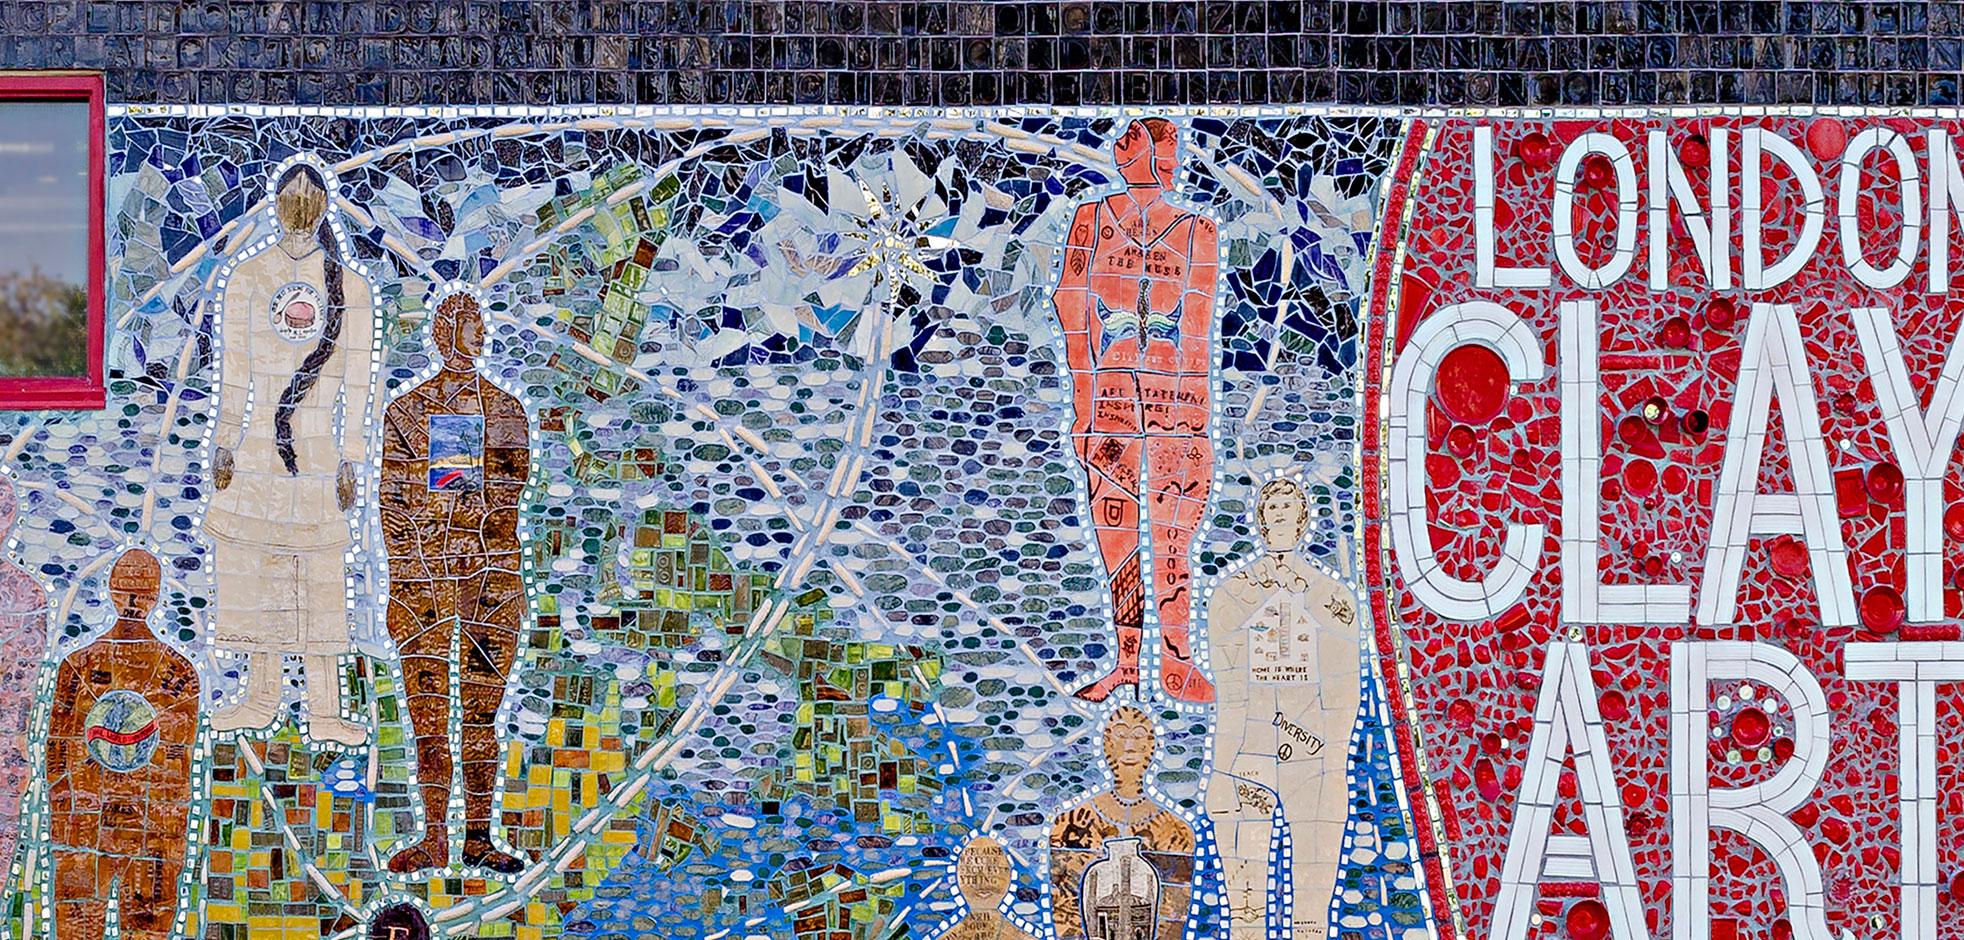 london clay art centre mosaic mural